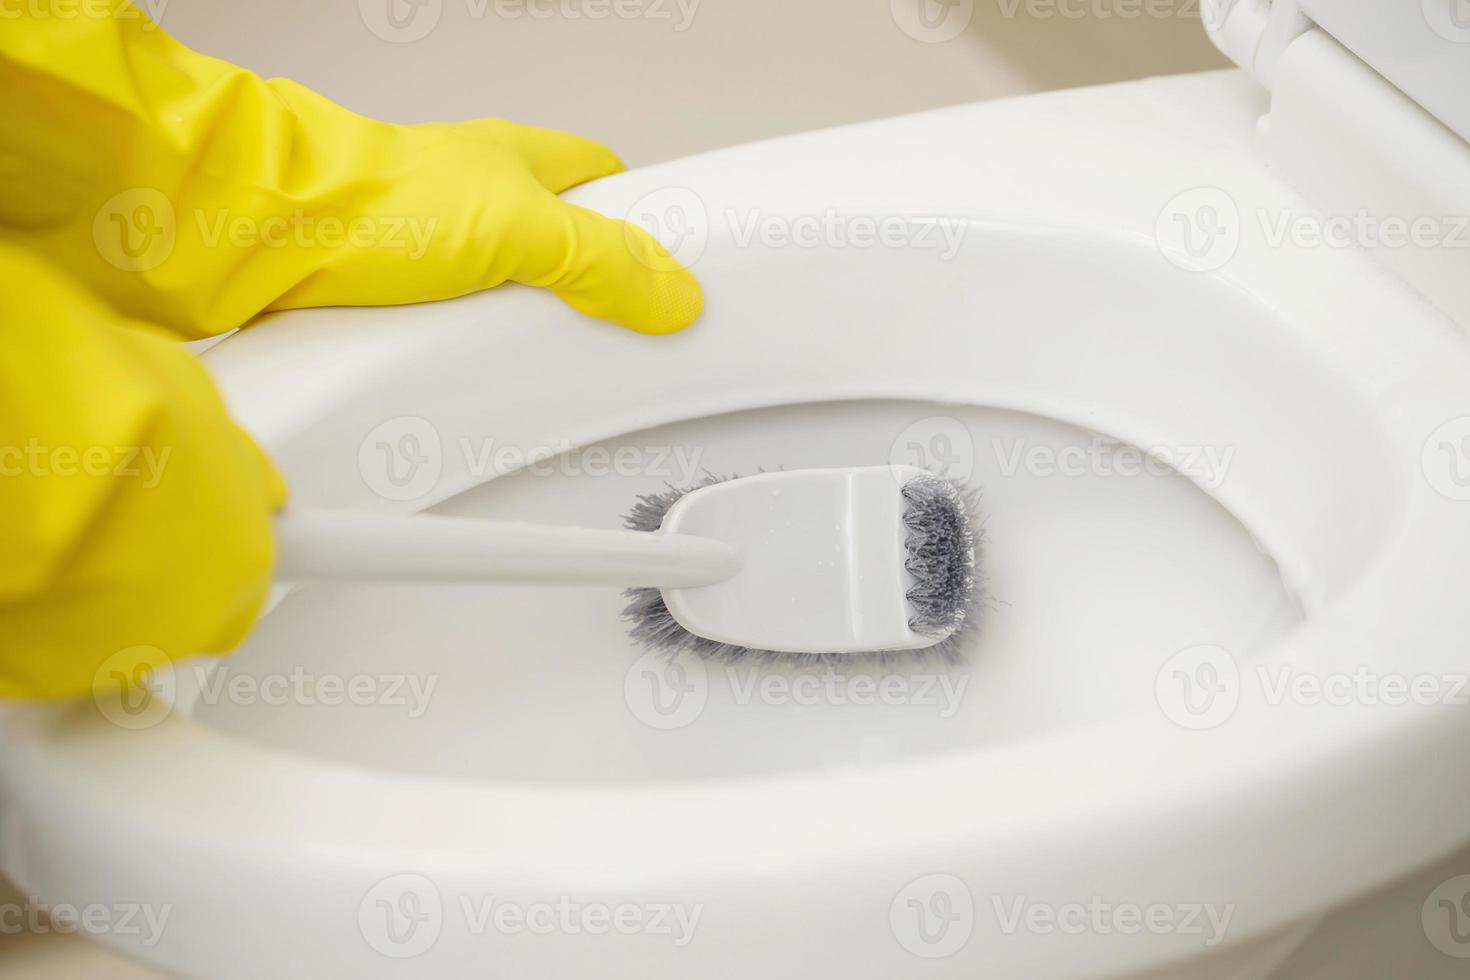 Hausfrauen verwenden Bürsten zu sauber das Badezimmer und nehmen Pflege von sanitär Waren. foto